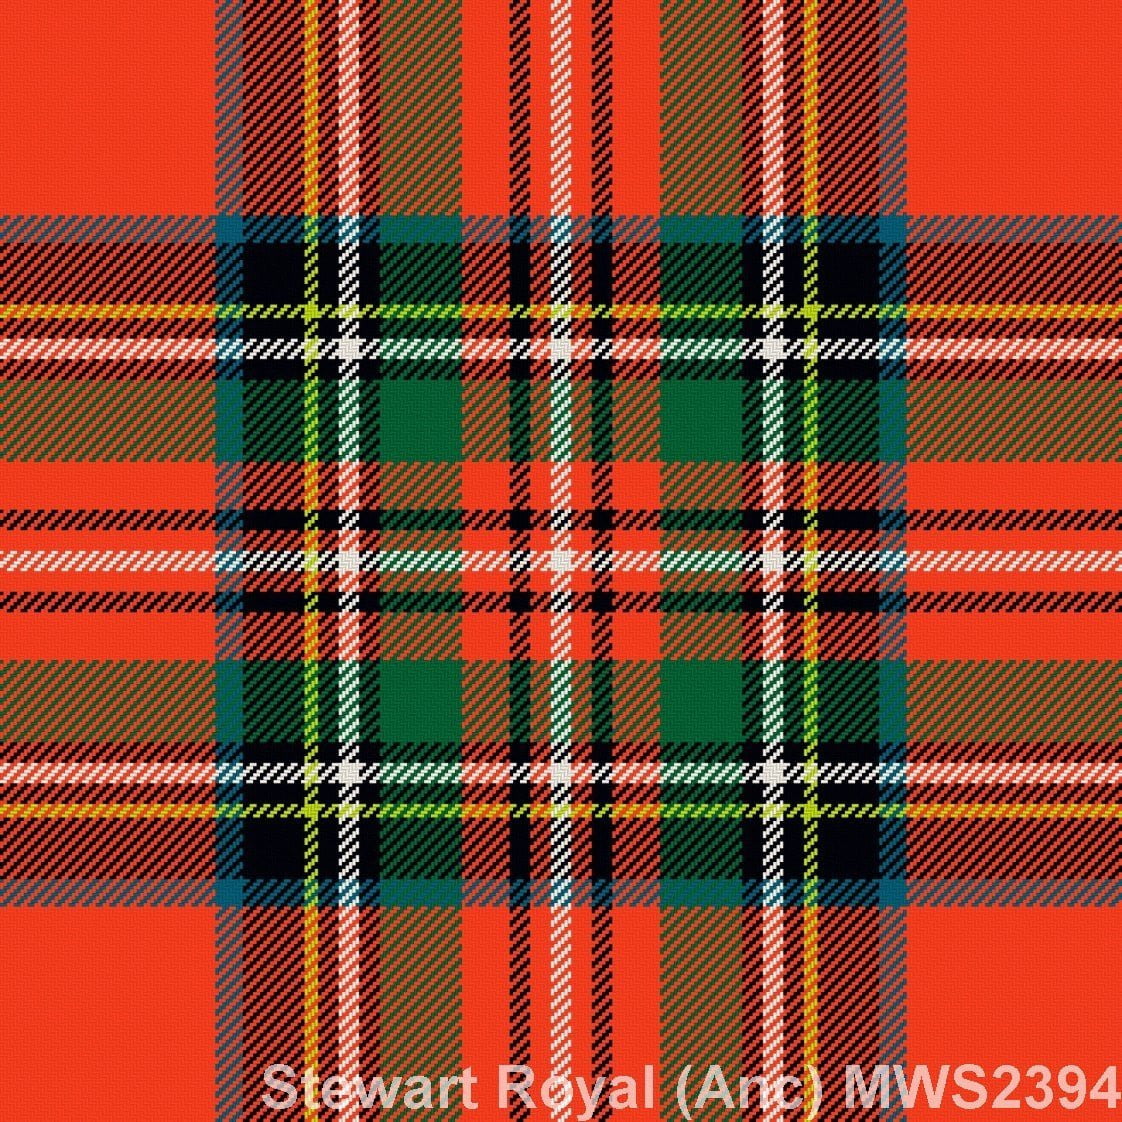 Stewart Royal Ancient